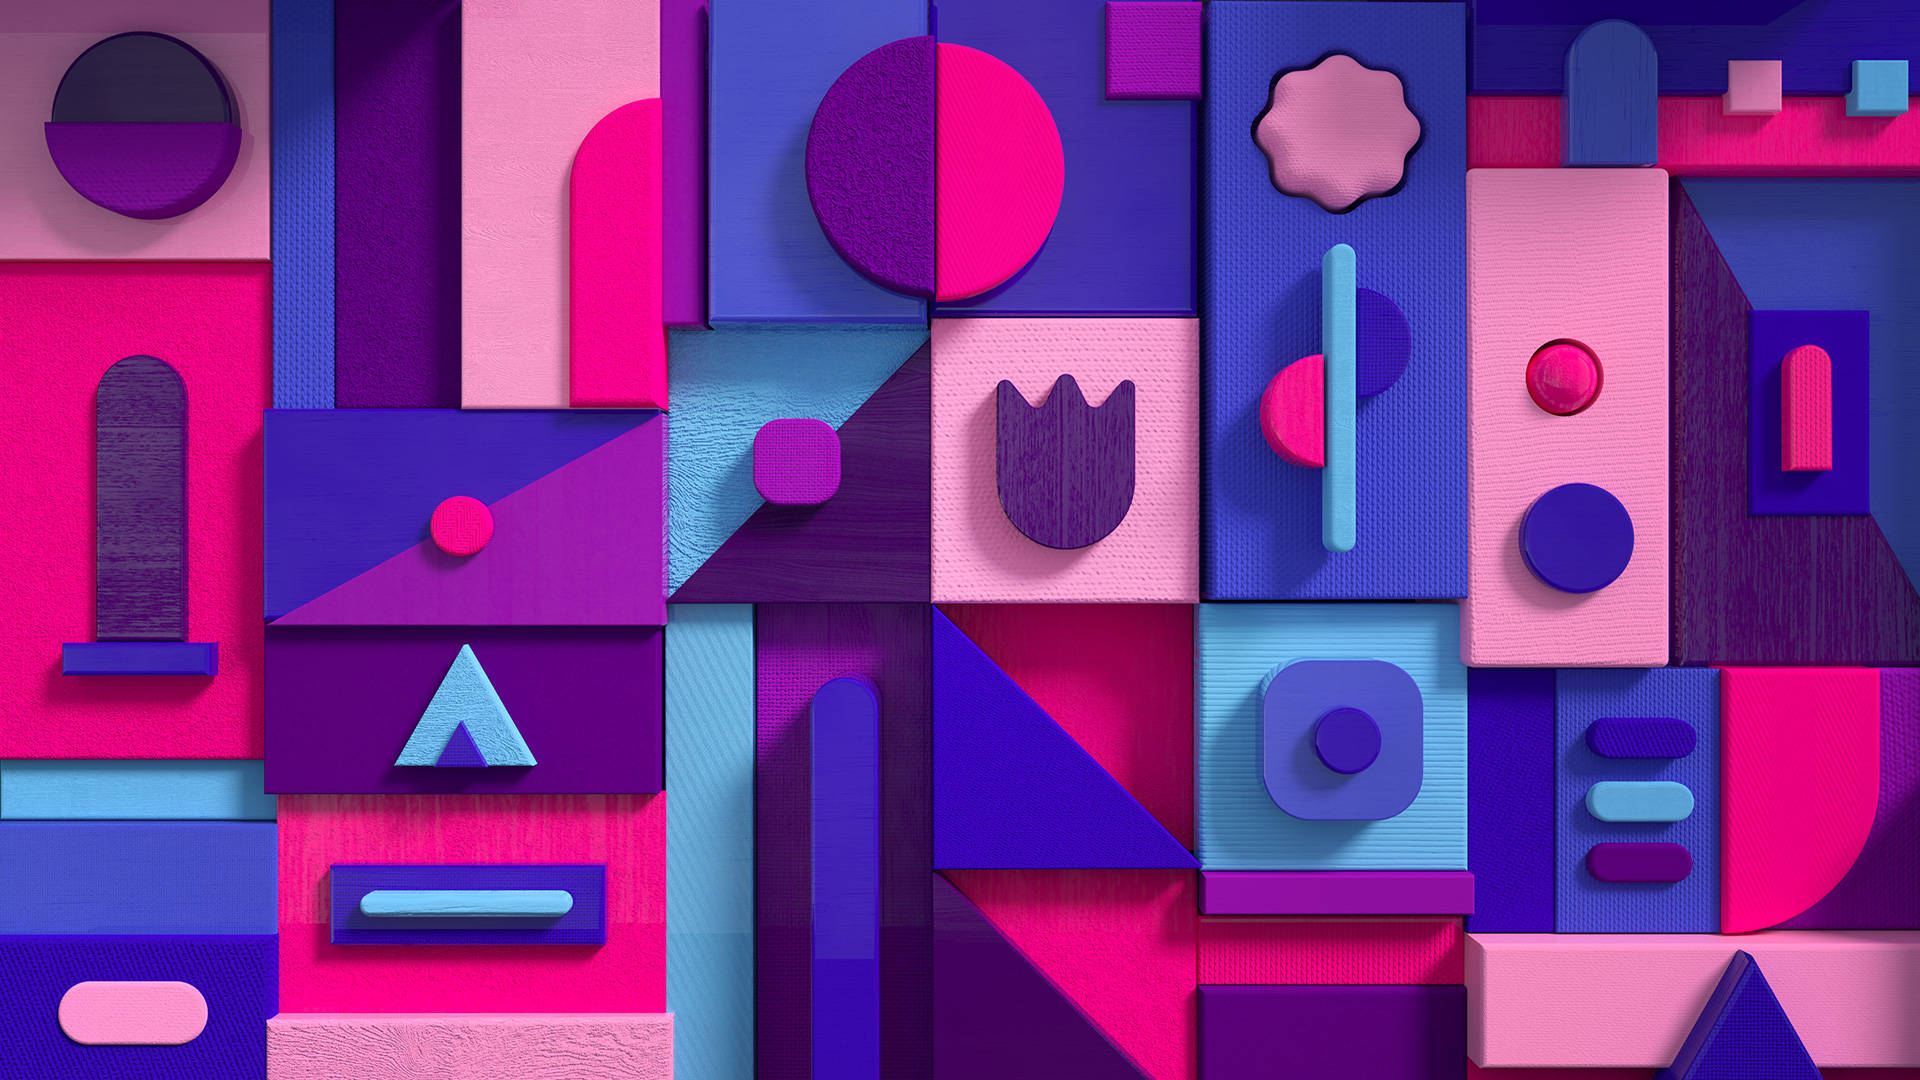 Microsoft Teams Pastel And Shapes Wallpaper